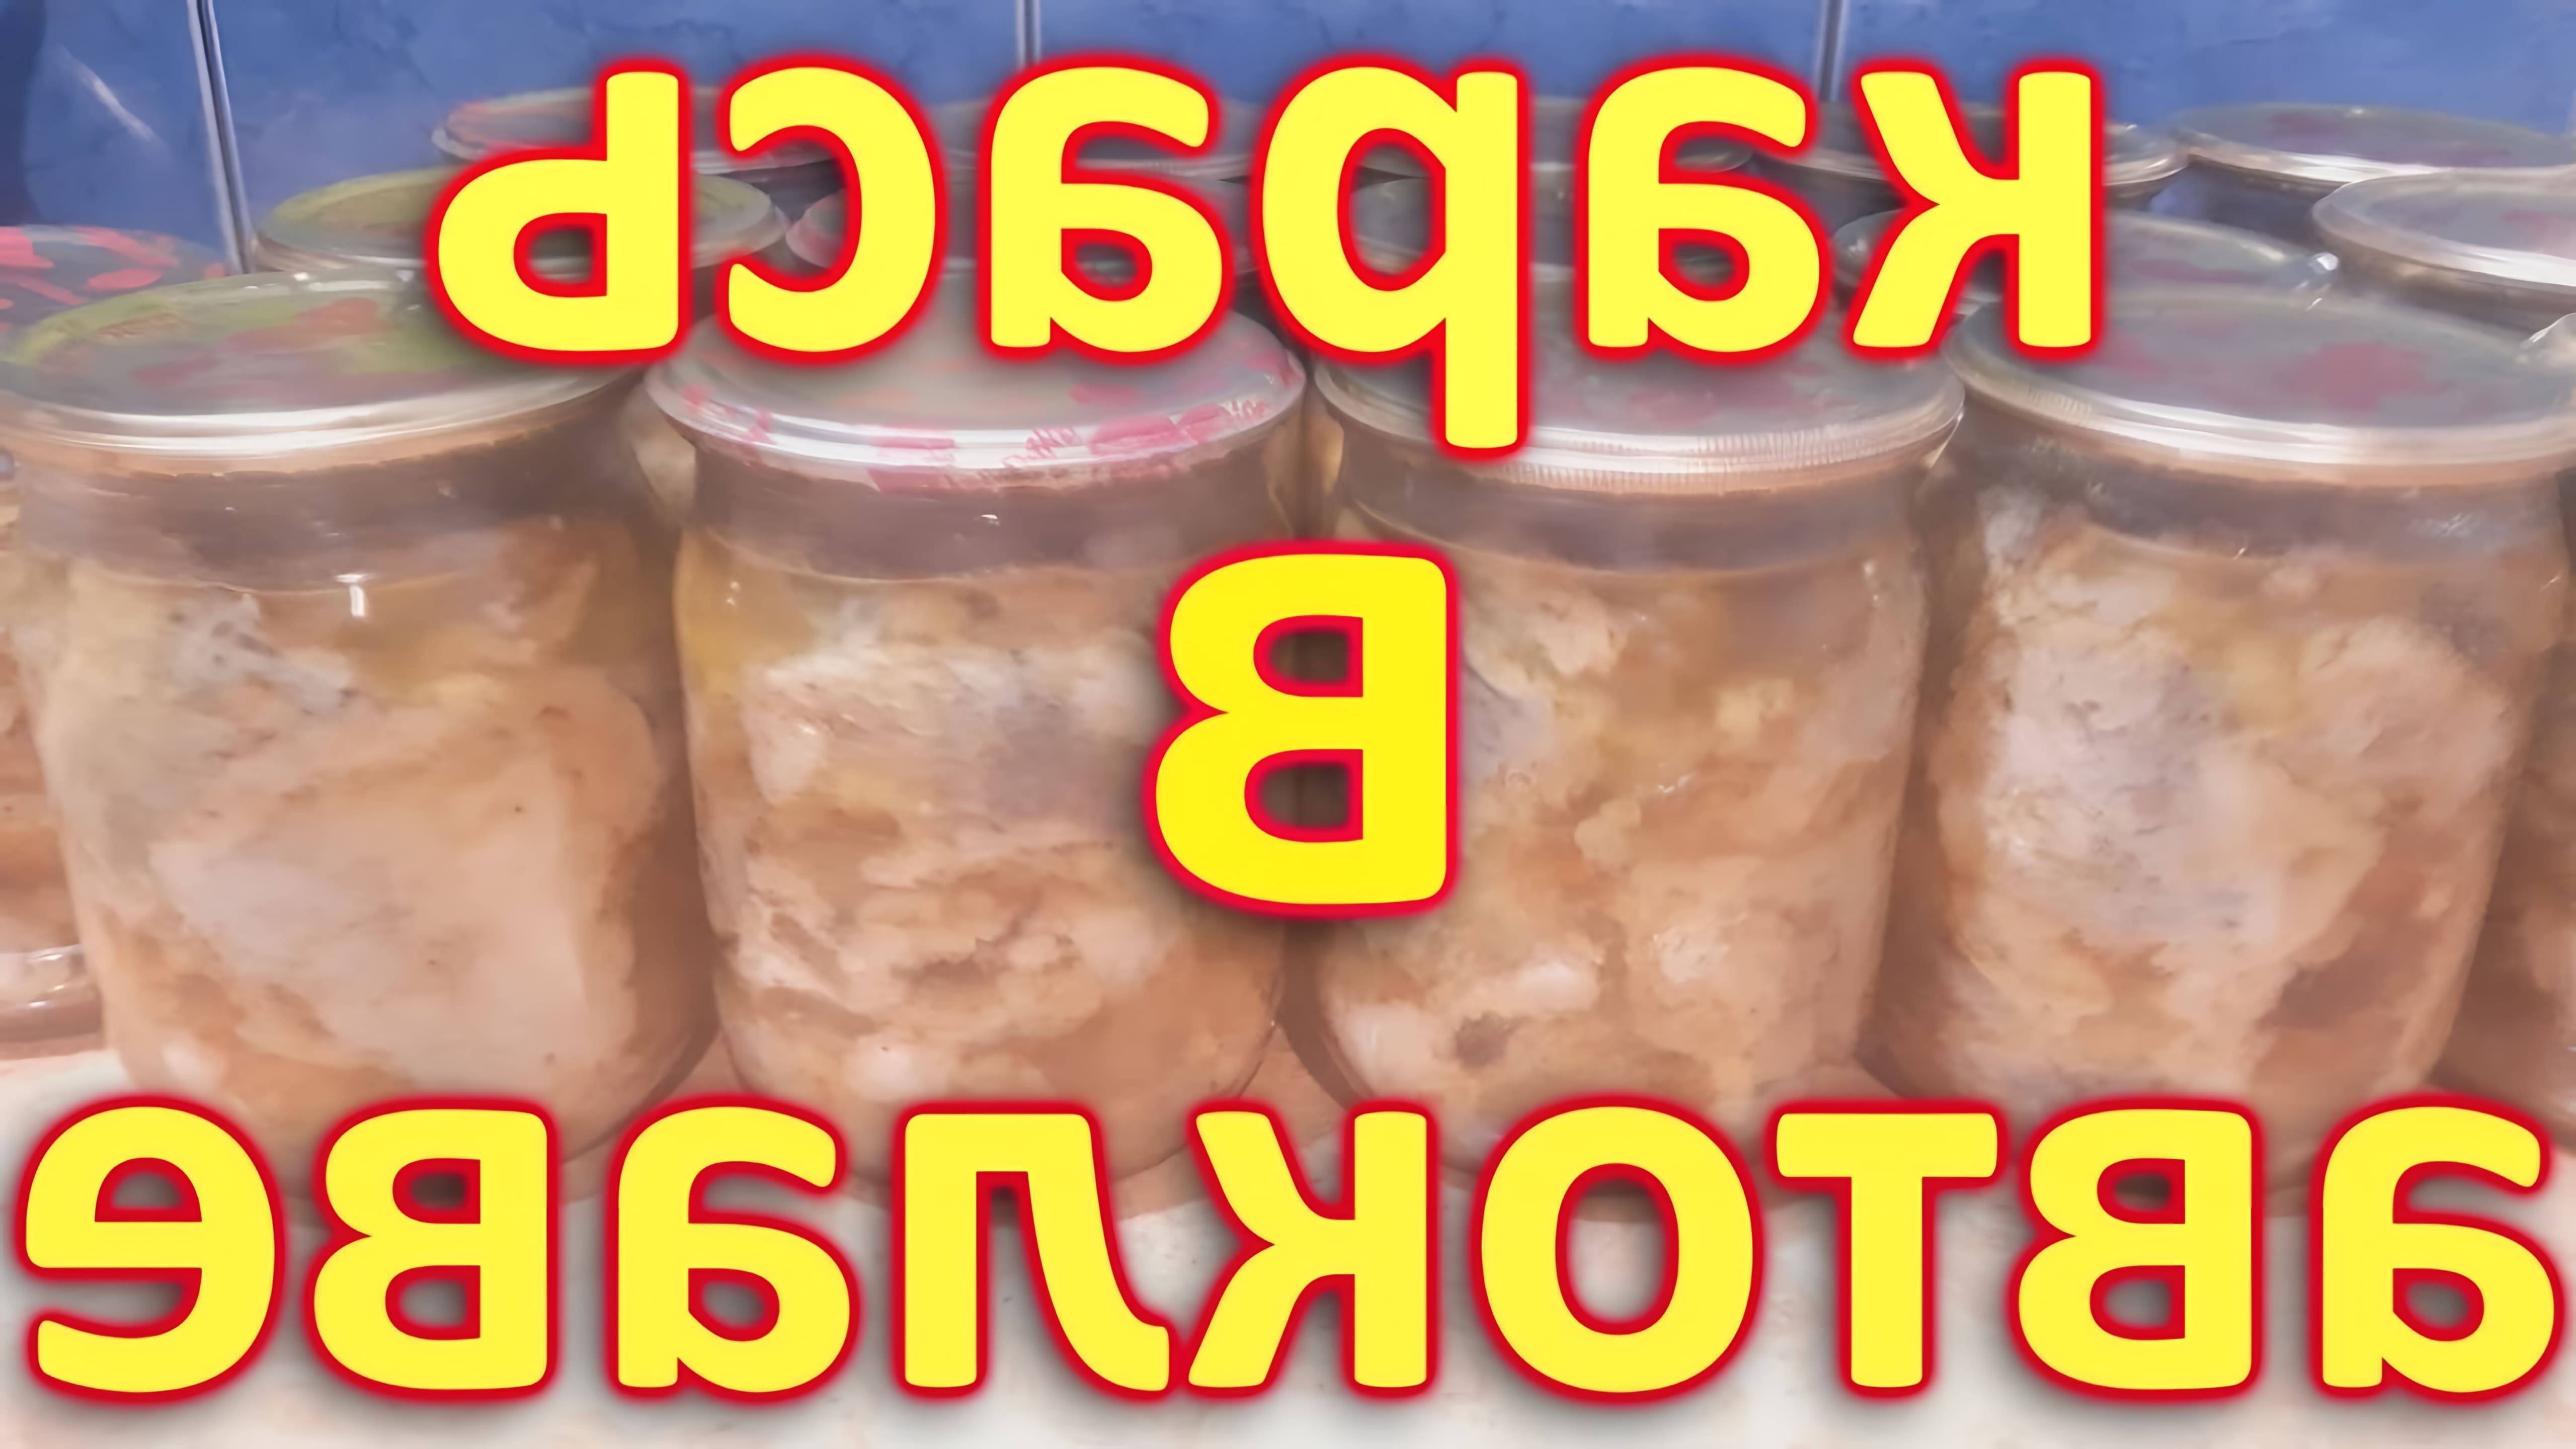 В этом видео-ролике будет подробно описан рецепт приготовления консервов из карася в масле в автоклаве в домашних условиях